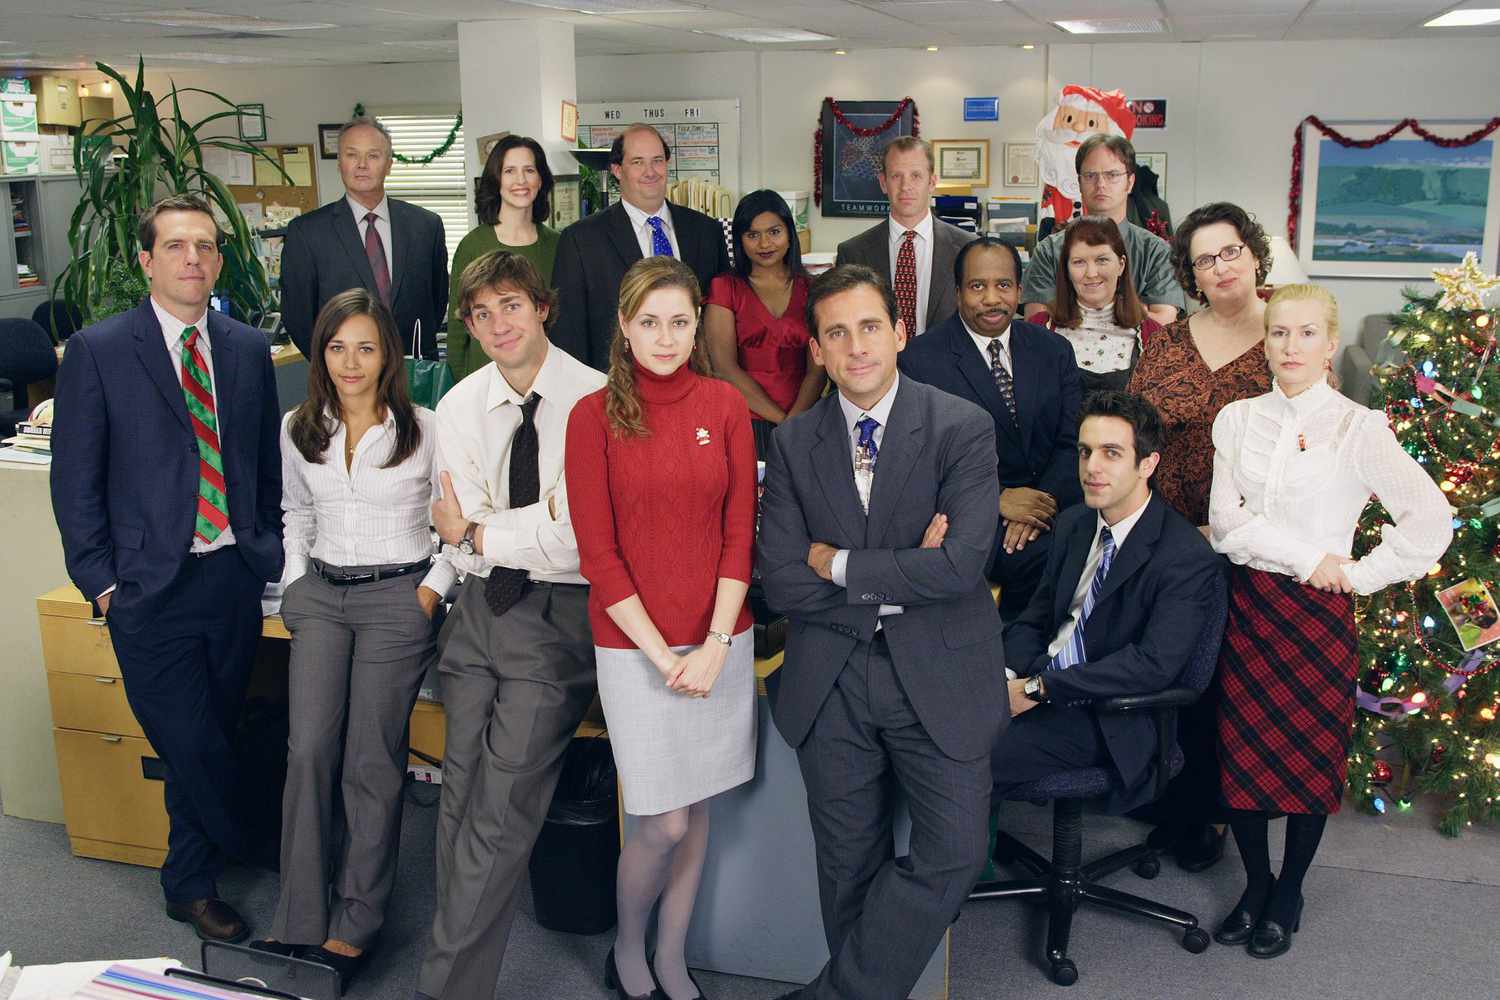 El cast completo de The Office, posando y mirando hacia la cámara.